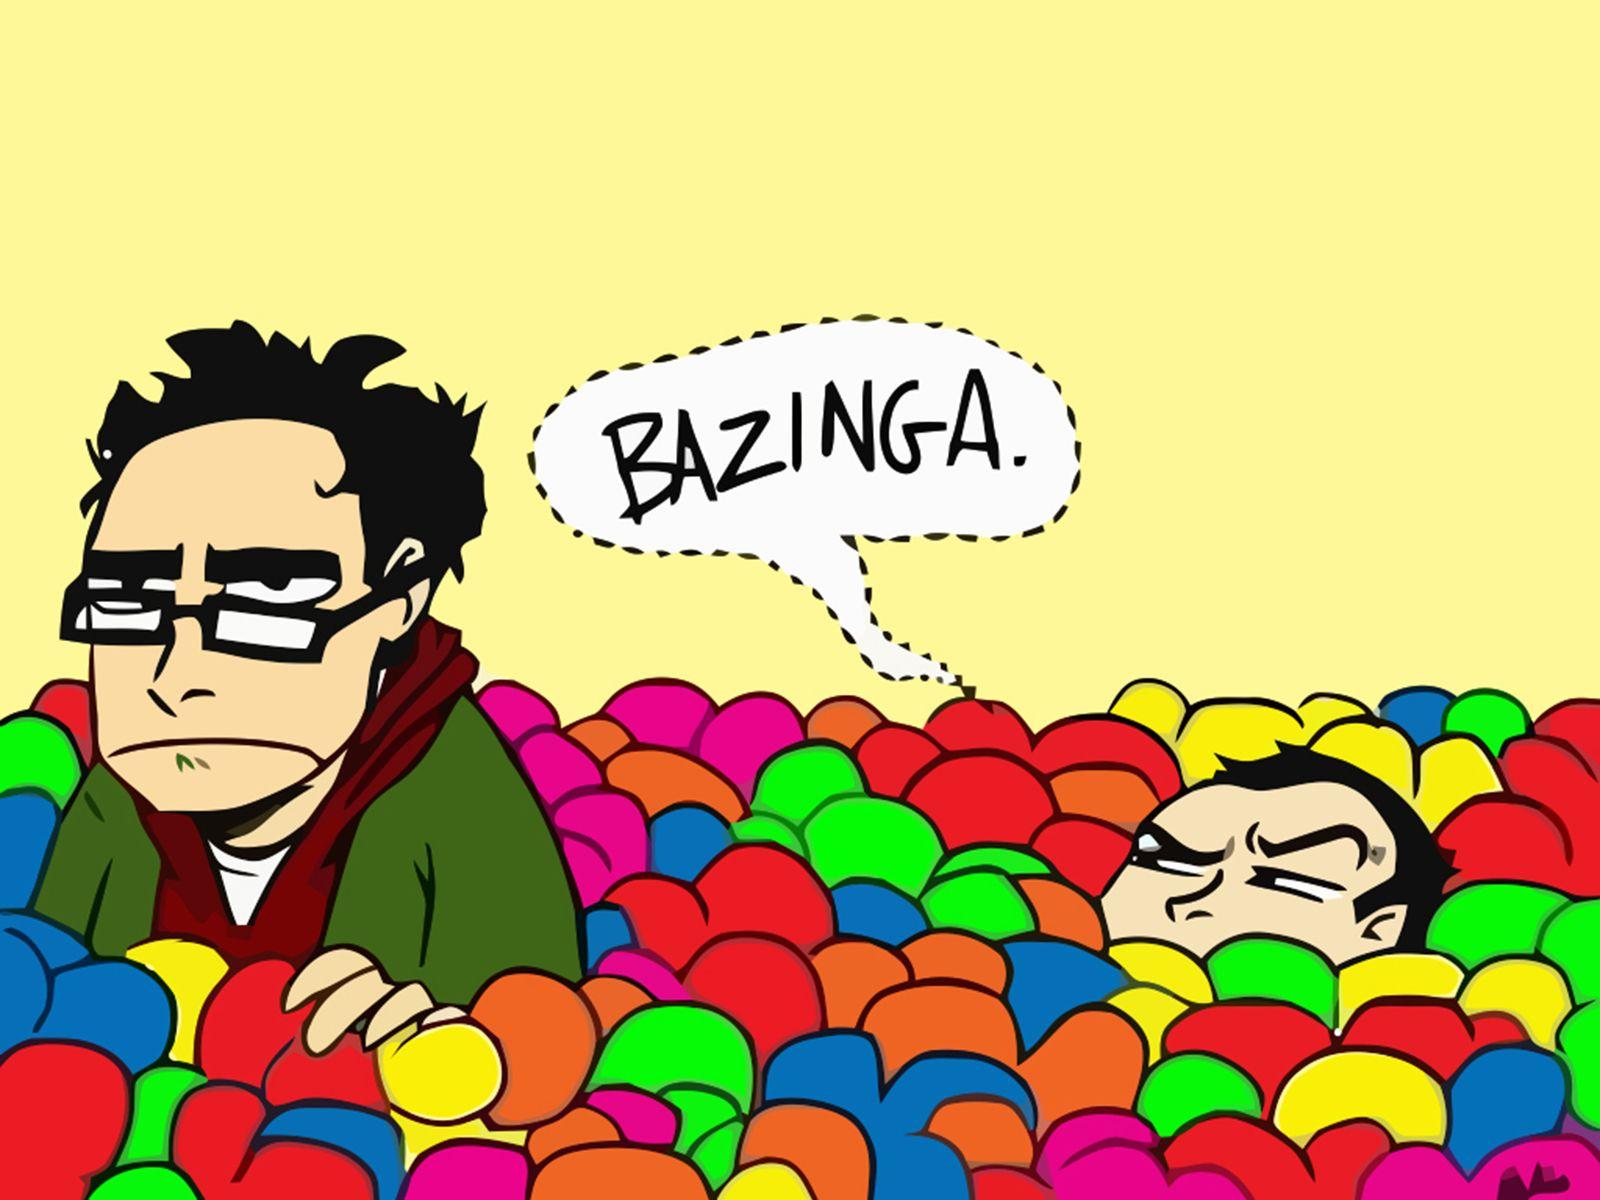 Big Bang Theory Bazinga, High Definition, High Quality